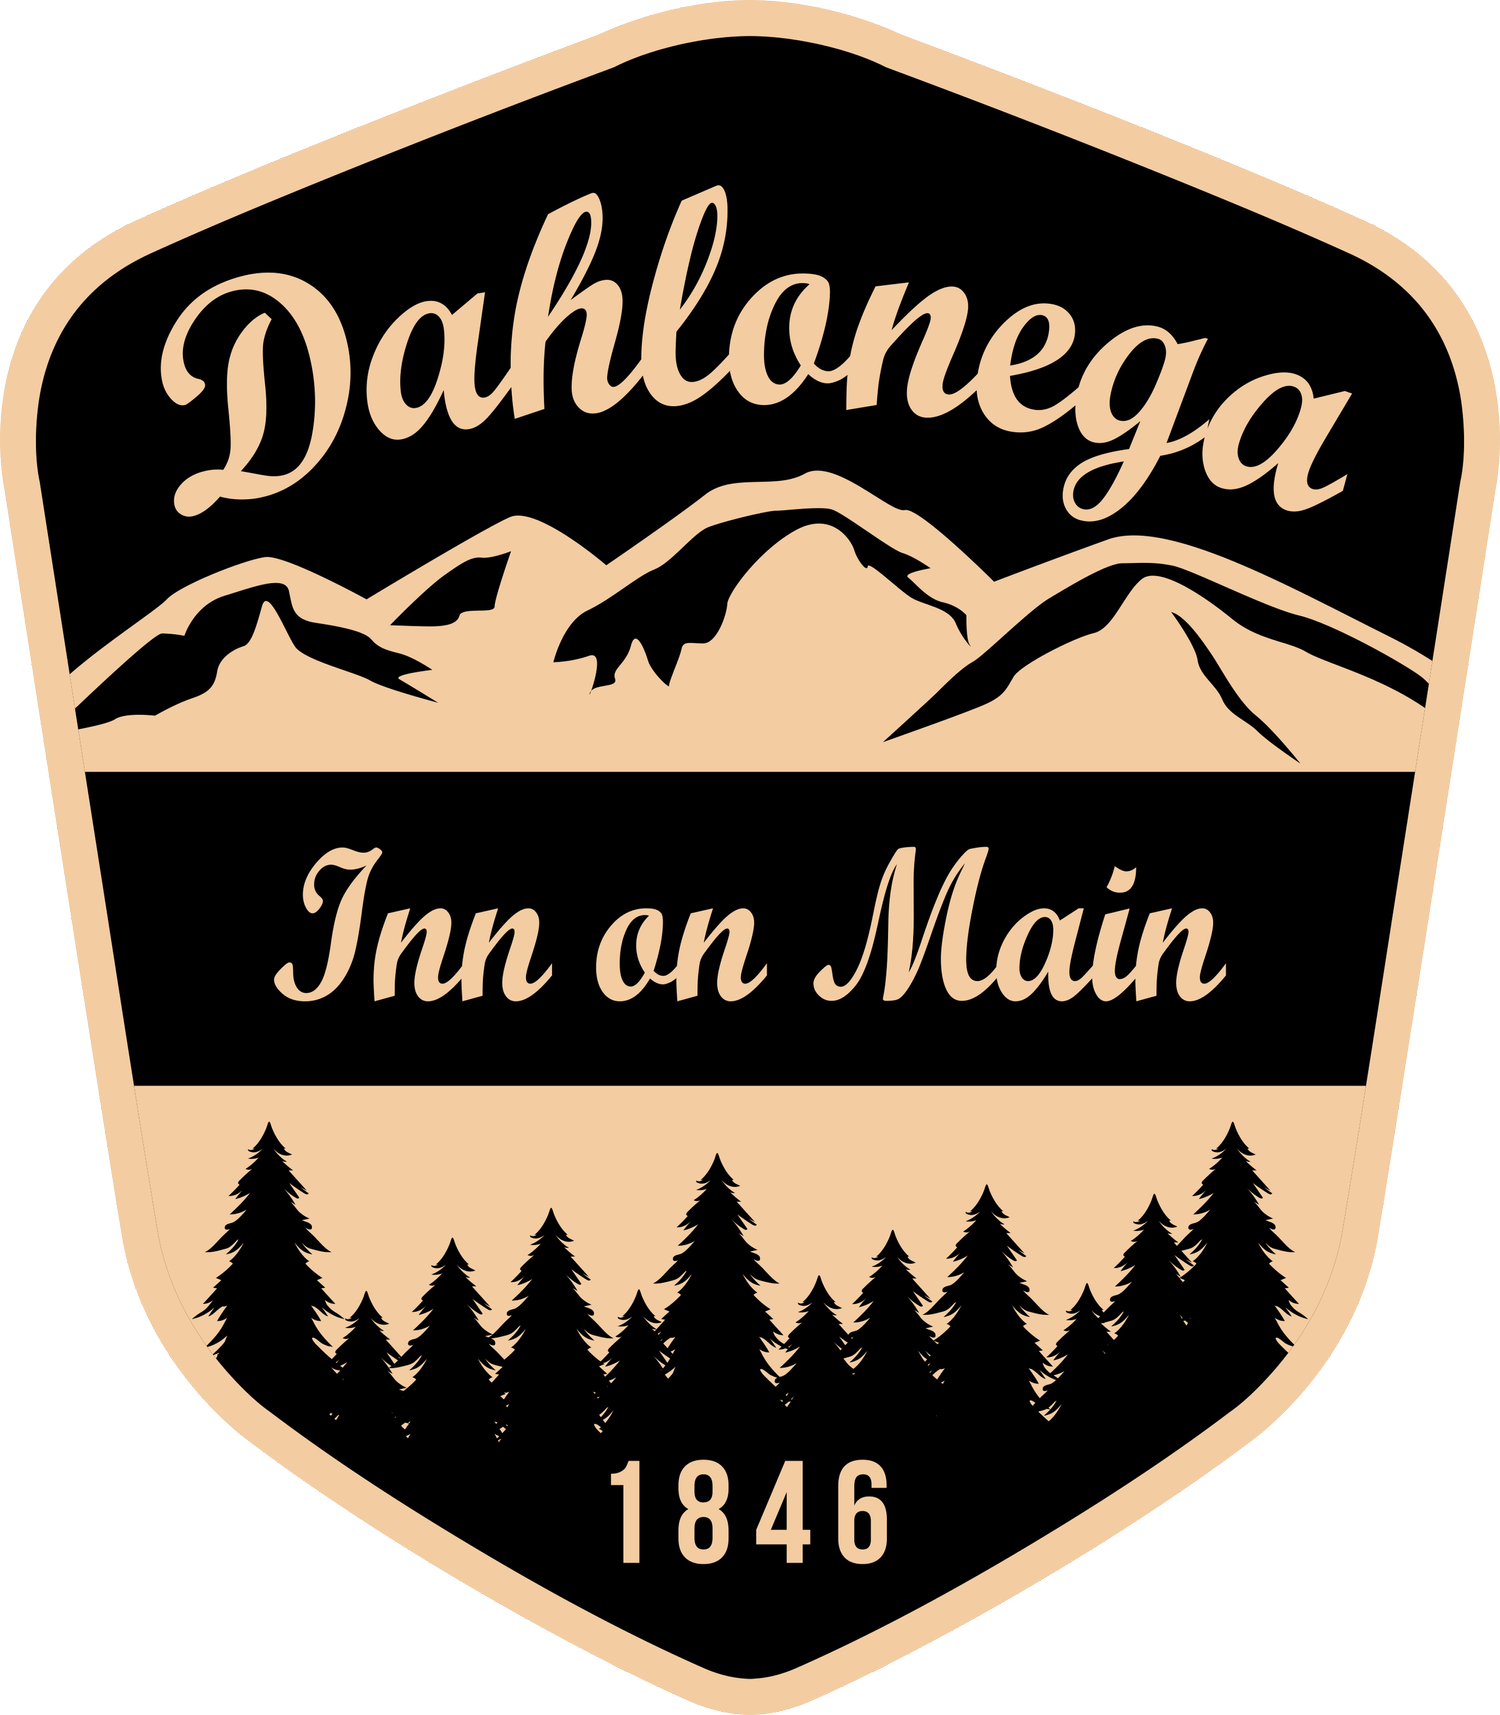 Dahlonega Inn On Main